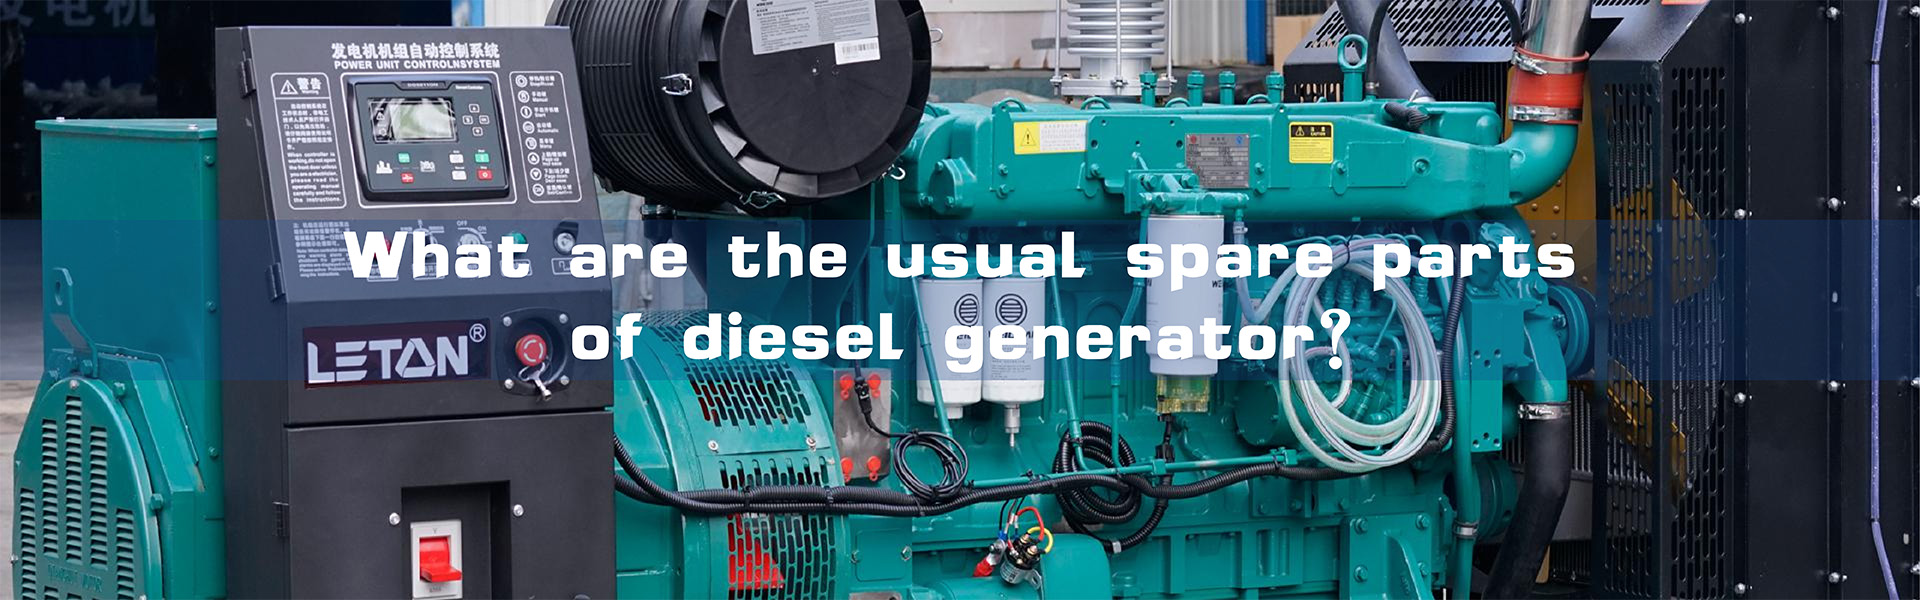 Који су уобичајени резервни делови дизел генератора?